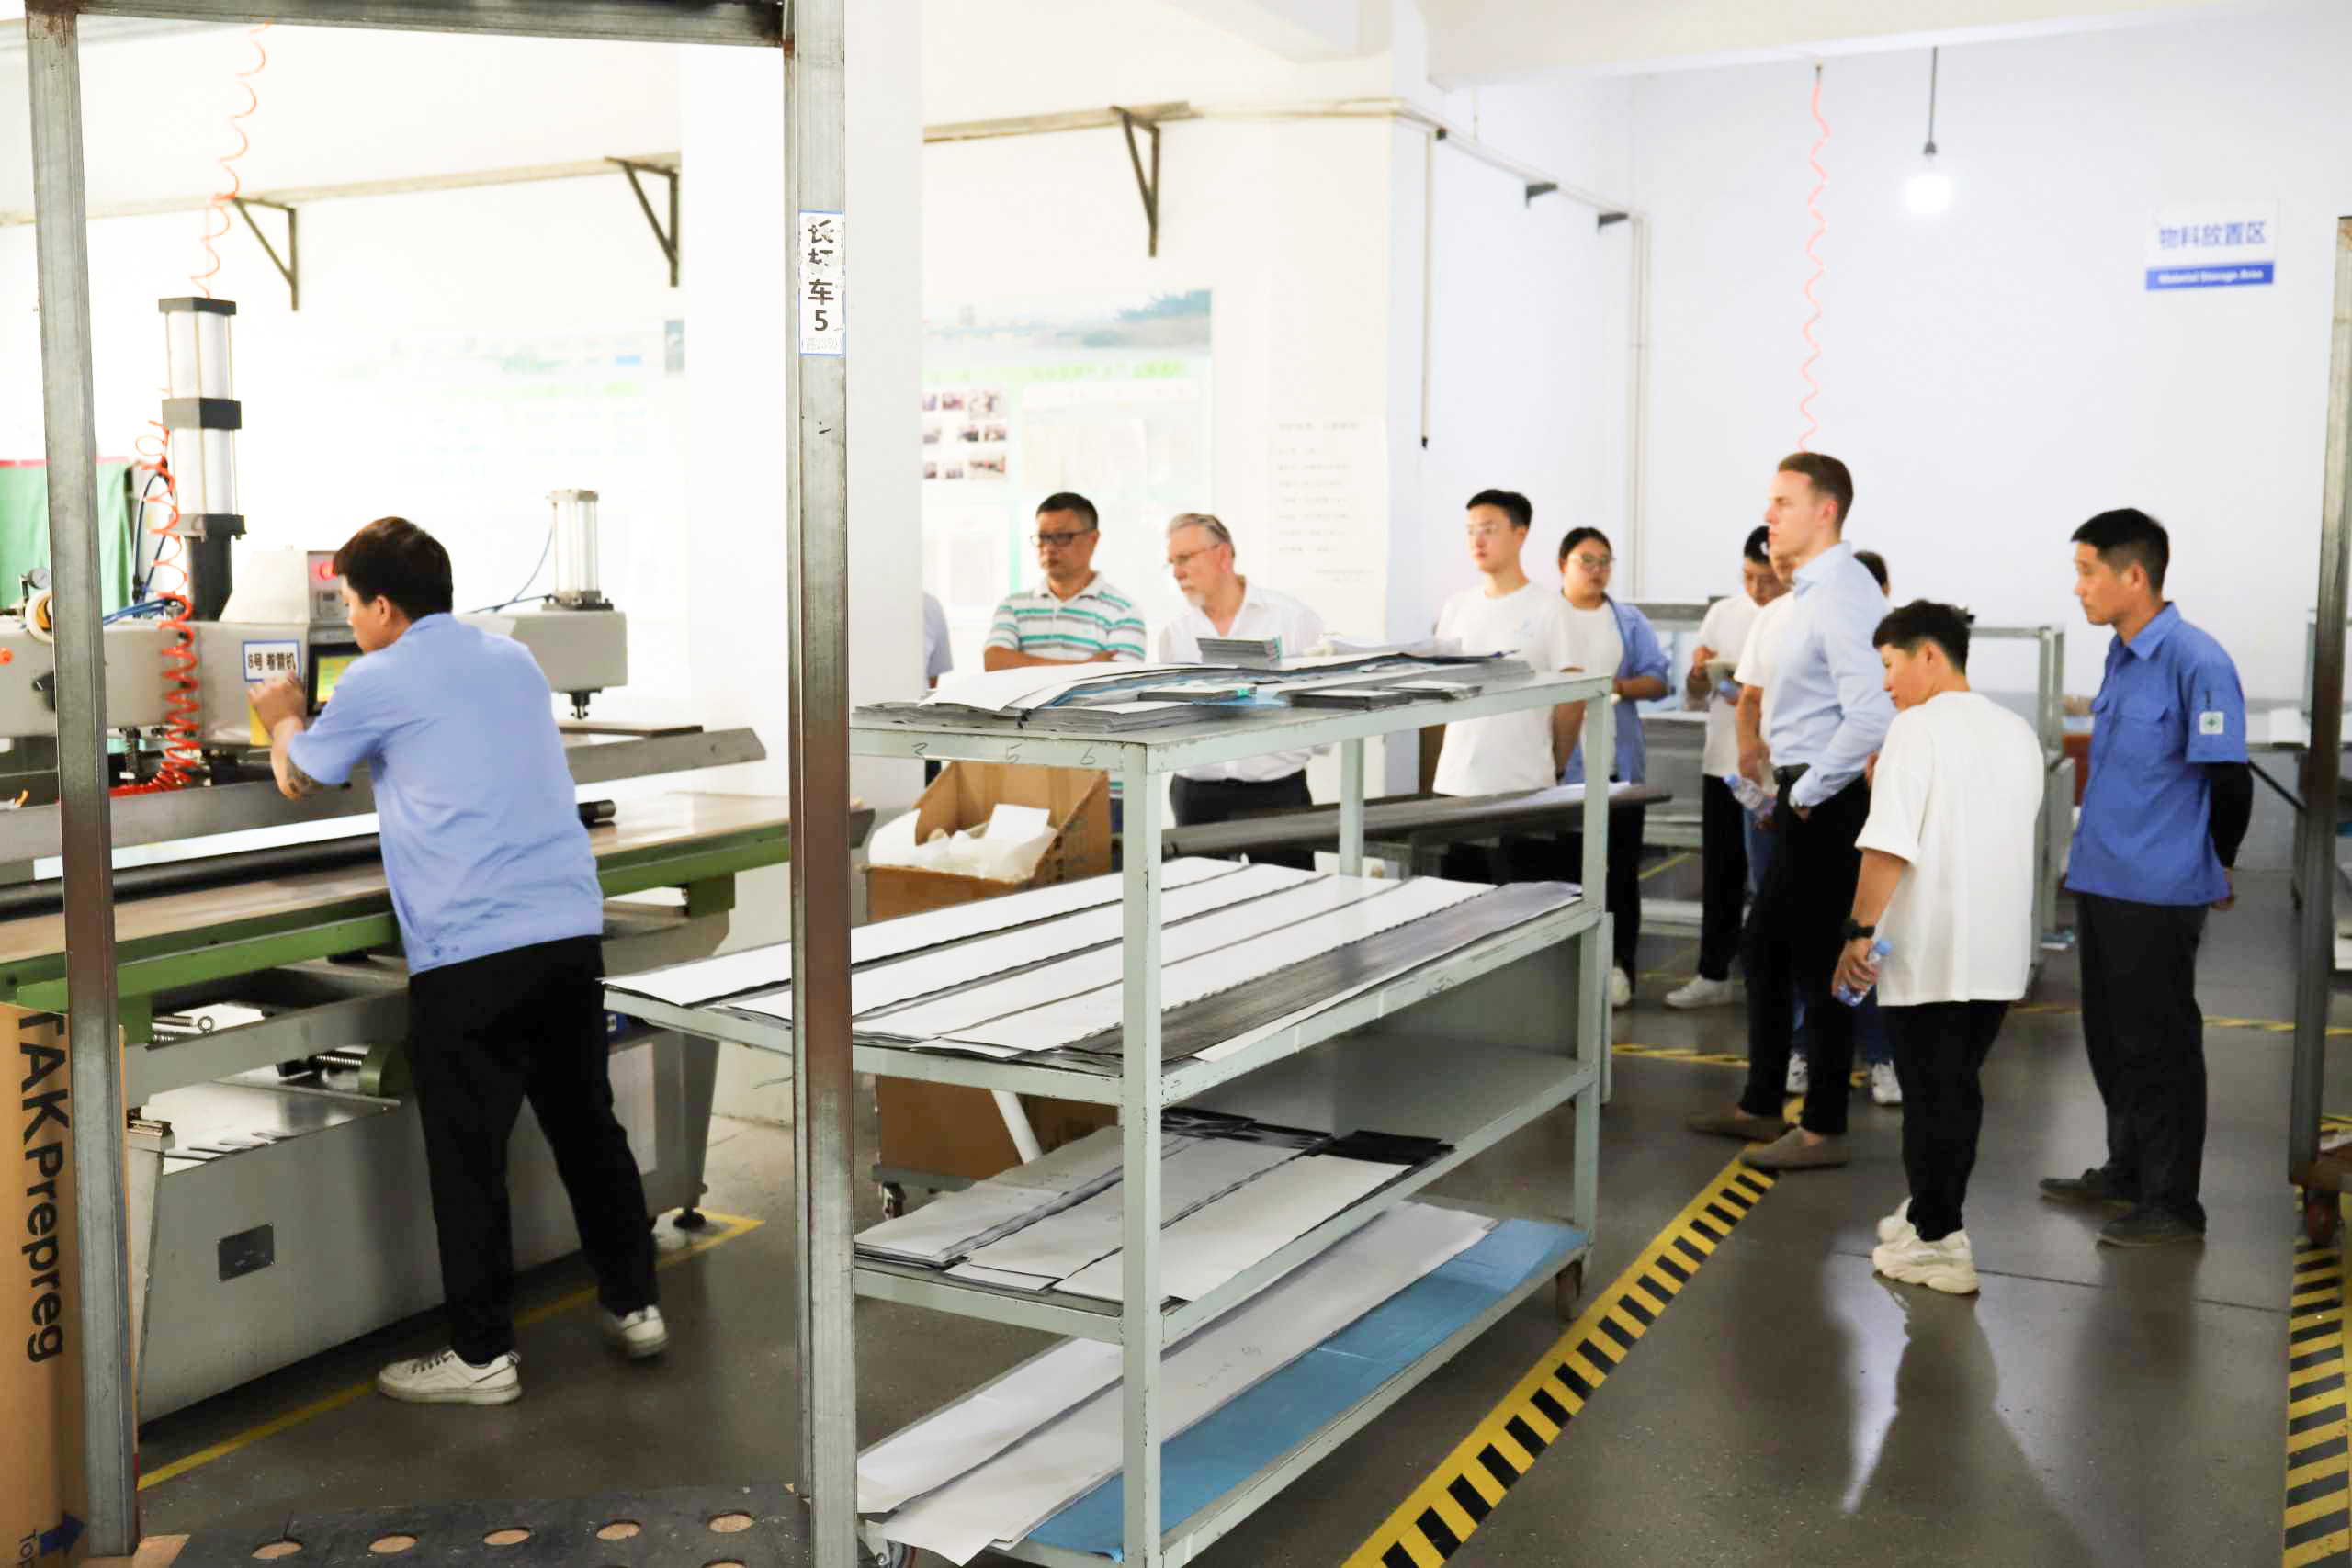 Langjähriger deutscher Partner besucht unsere Fabrik in China, um die Geschäftsbeziehungen zu stärken